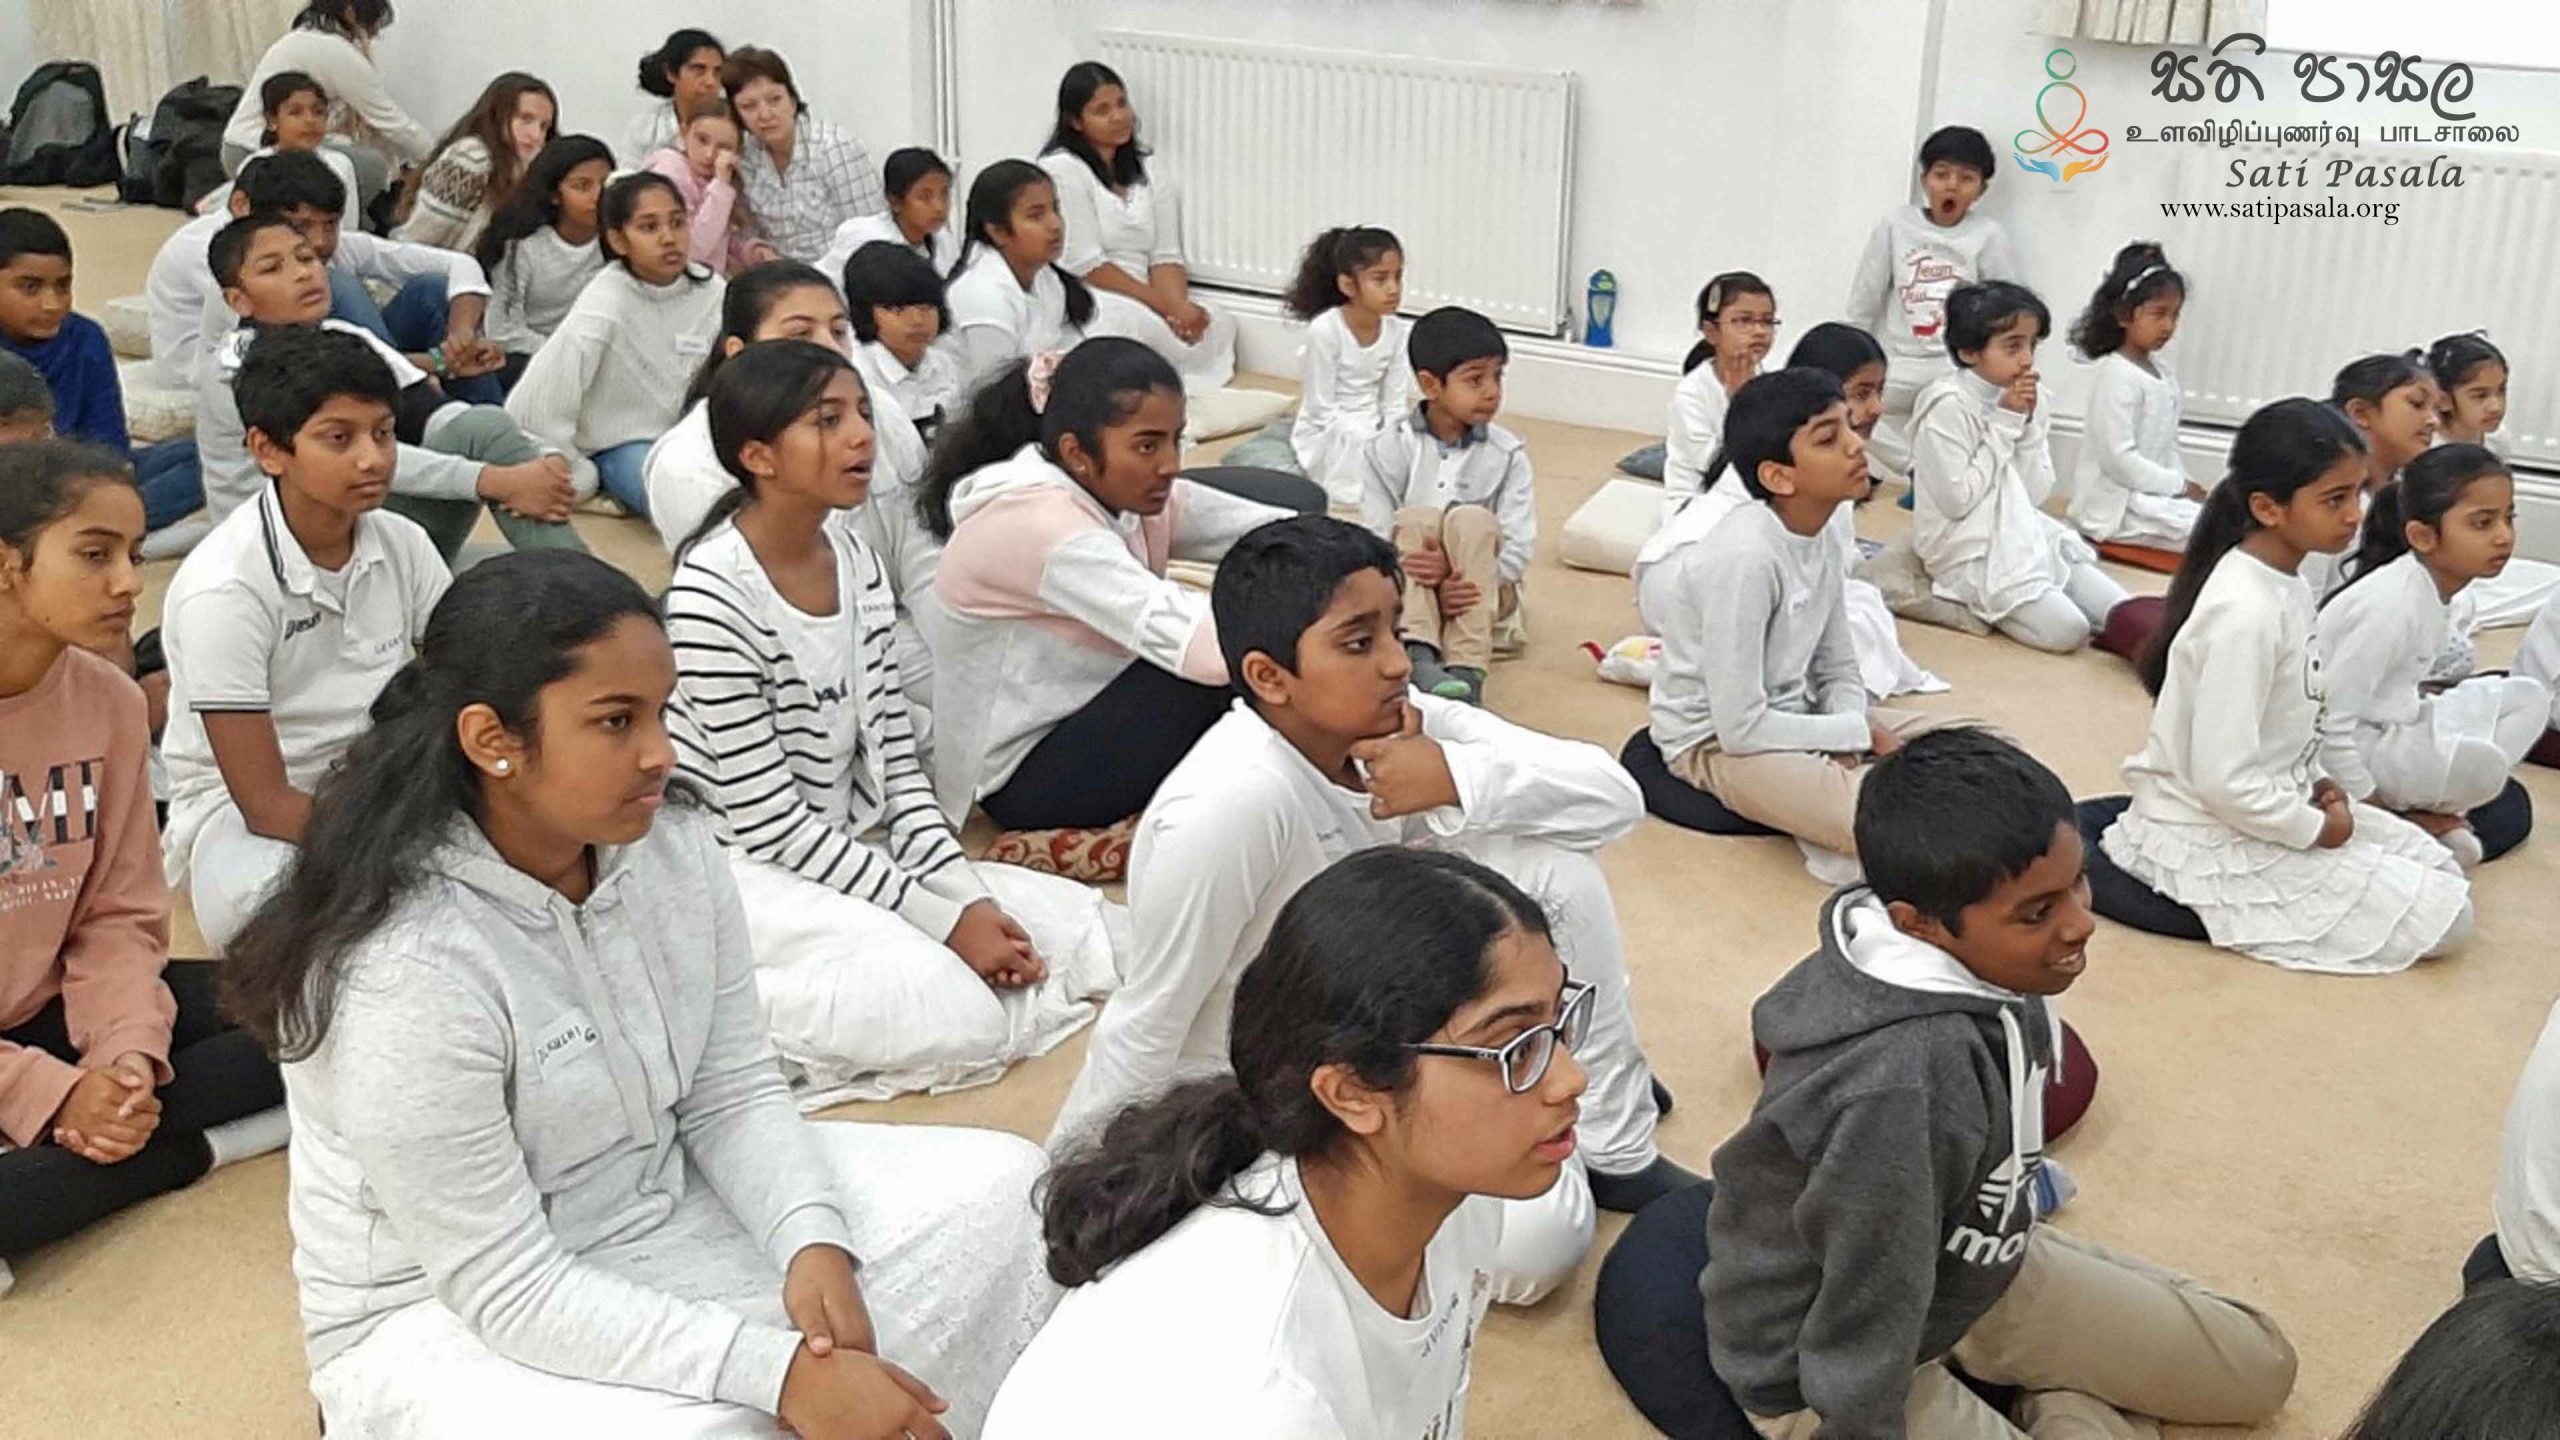 Sati Pasala Day Camp at Thames Buddhist Vihara, United Kingdom